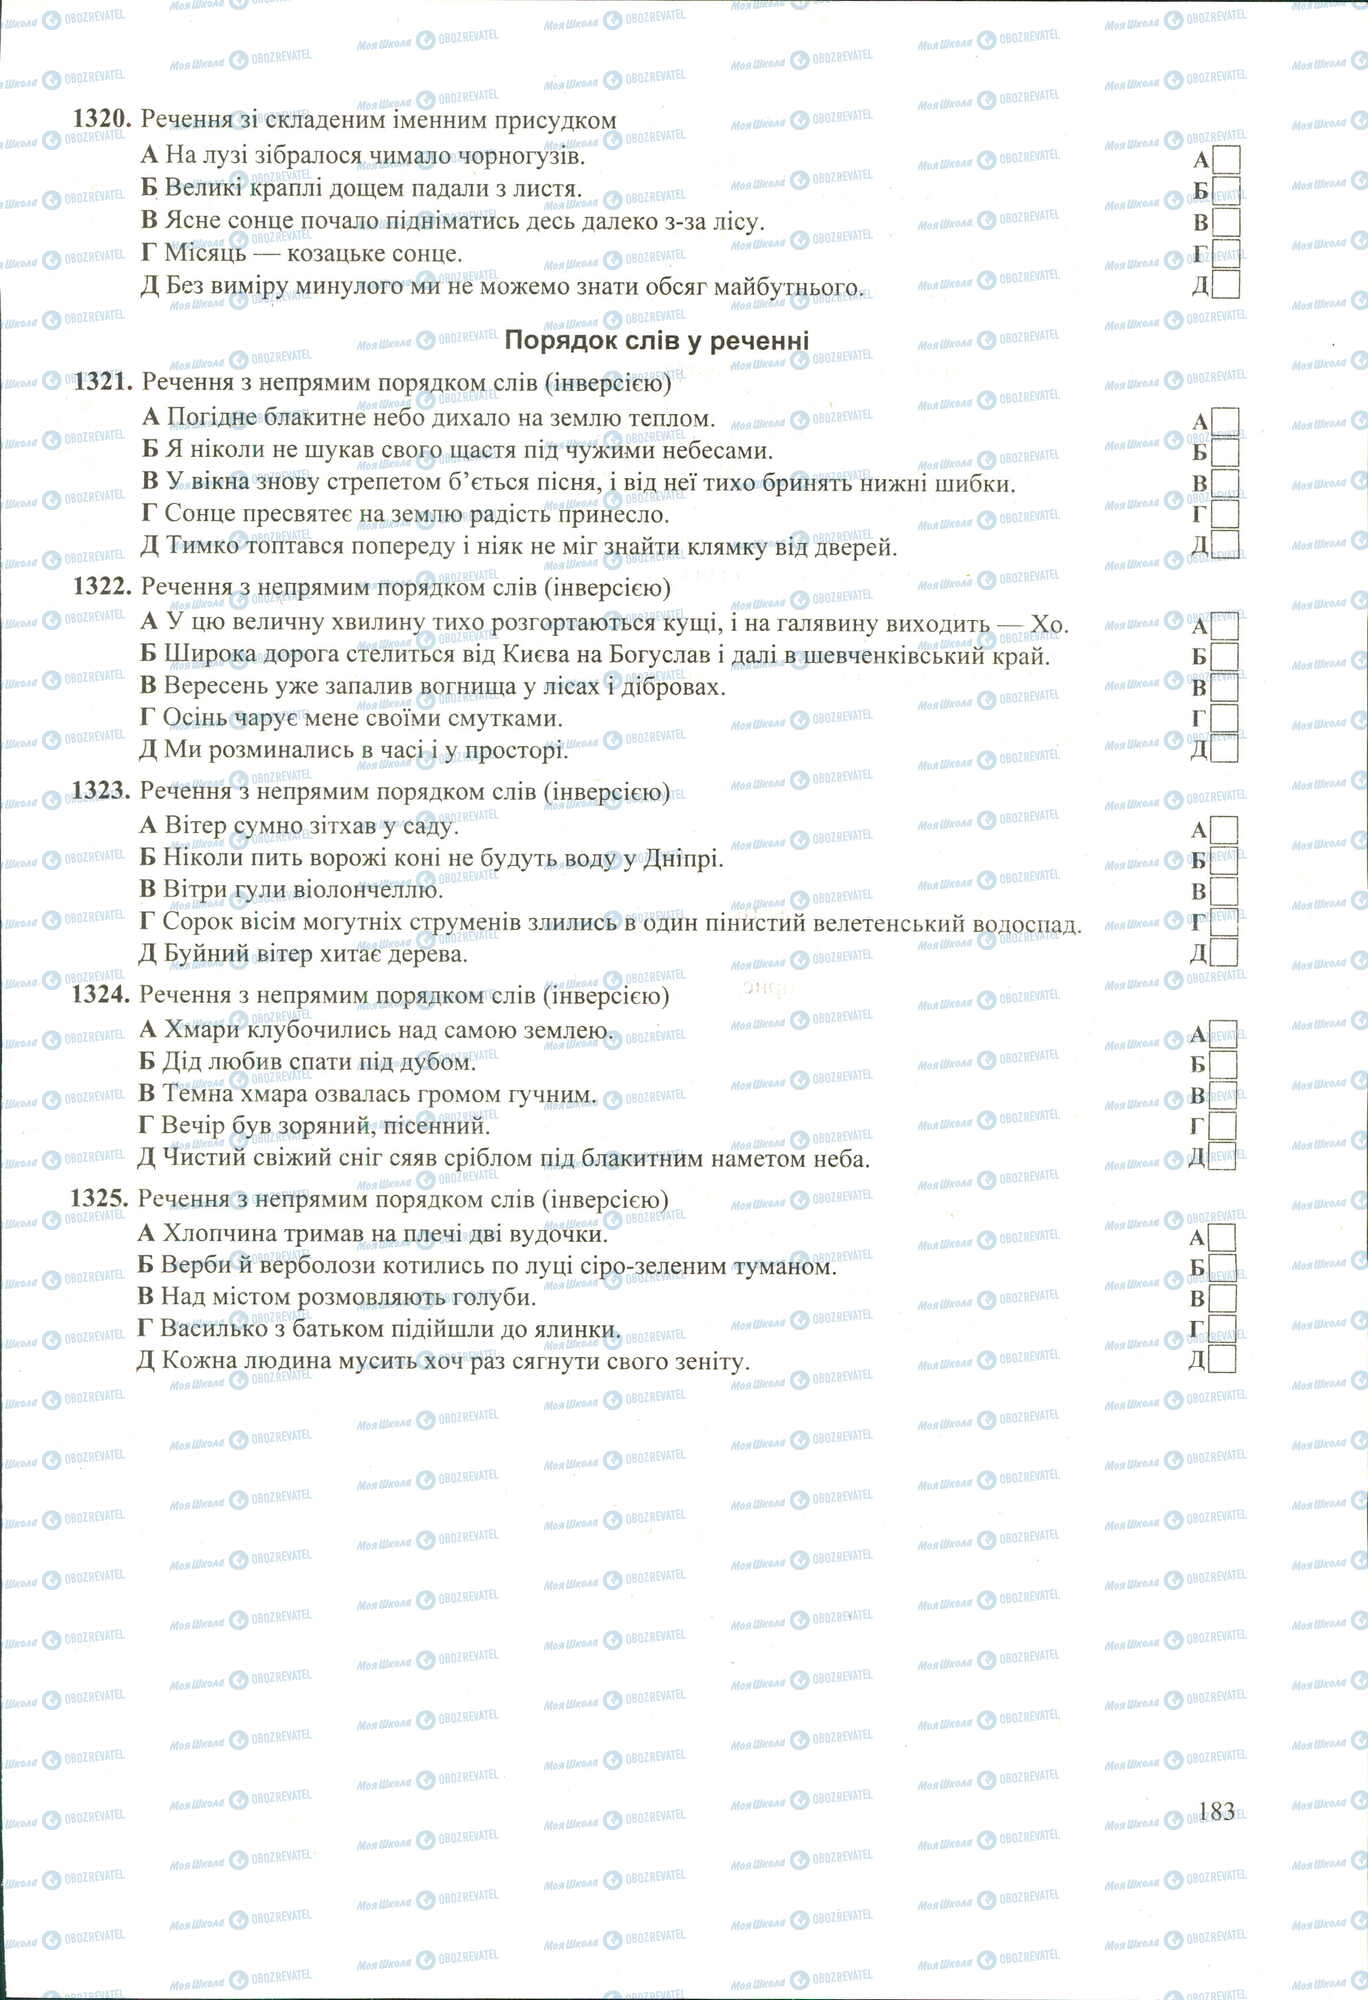 ЗНО Укр мова 11 класс страница 1320-1325